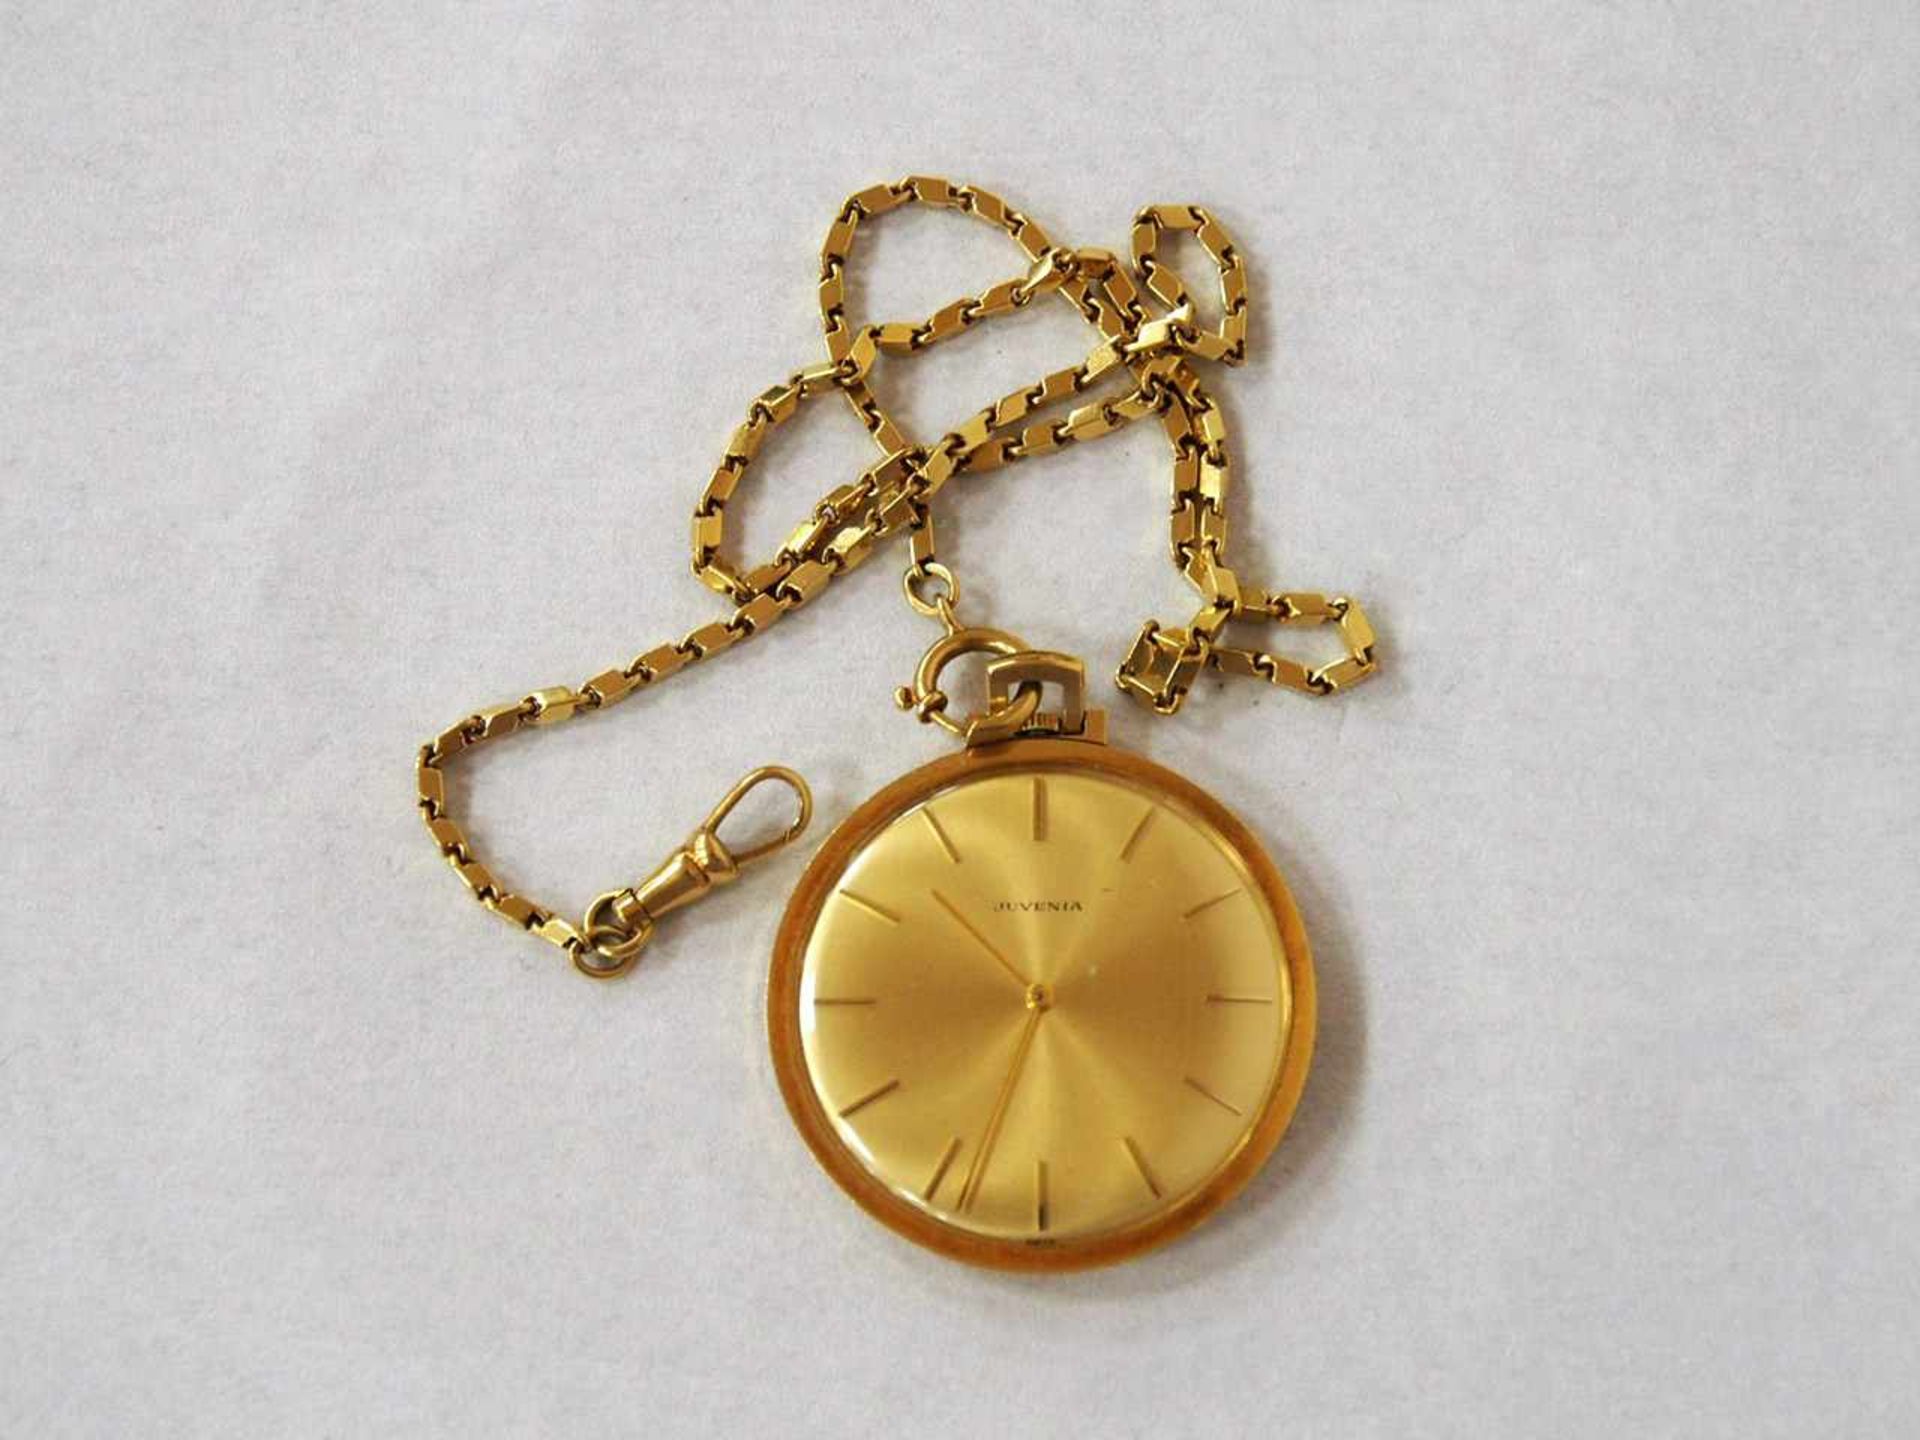 TaschenuhrGehäuse 750er Gold, Zifferblatt bezeichnet "Juvenia", Kronenaufzug, Uhrkette 750er Gold,